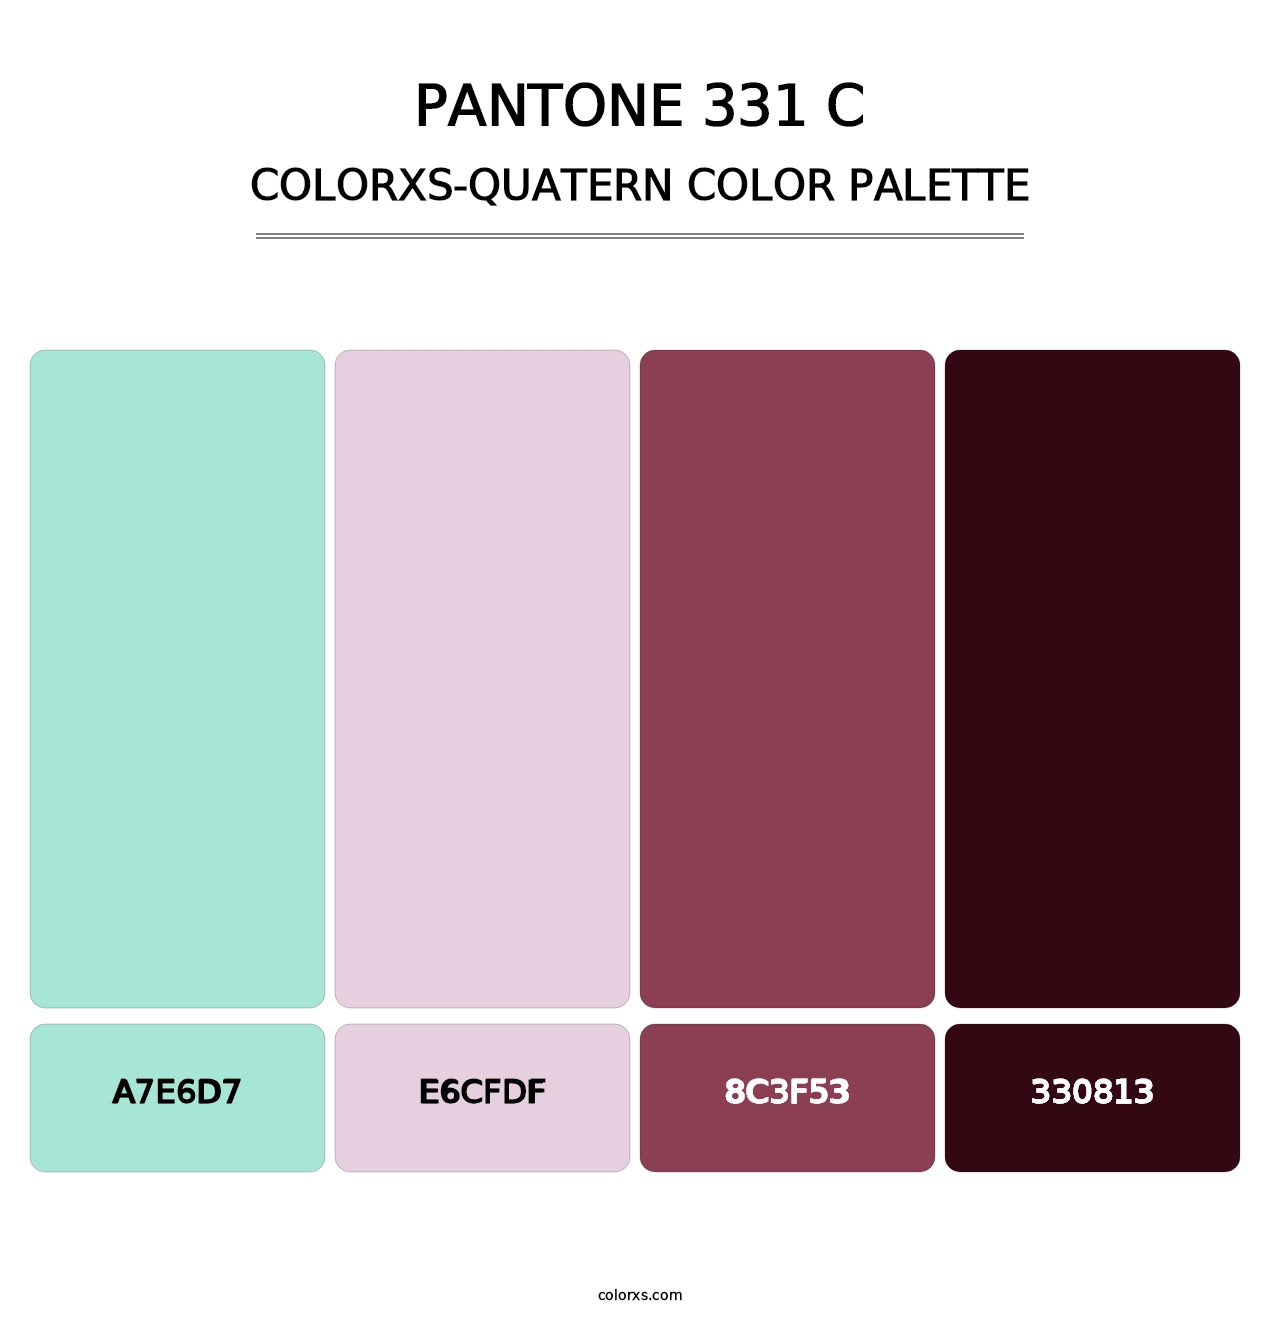 PANTONE 331 C - Colorxs Quatern Palette